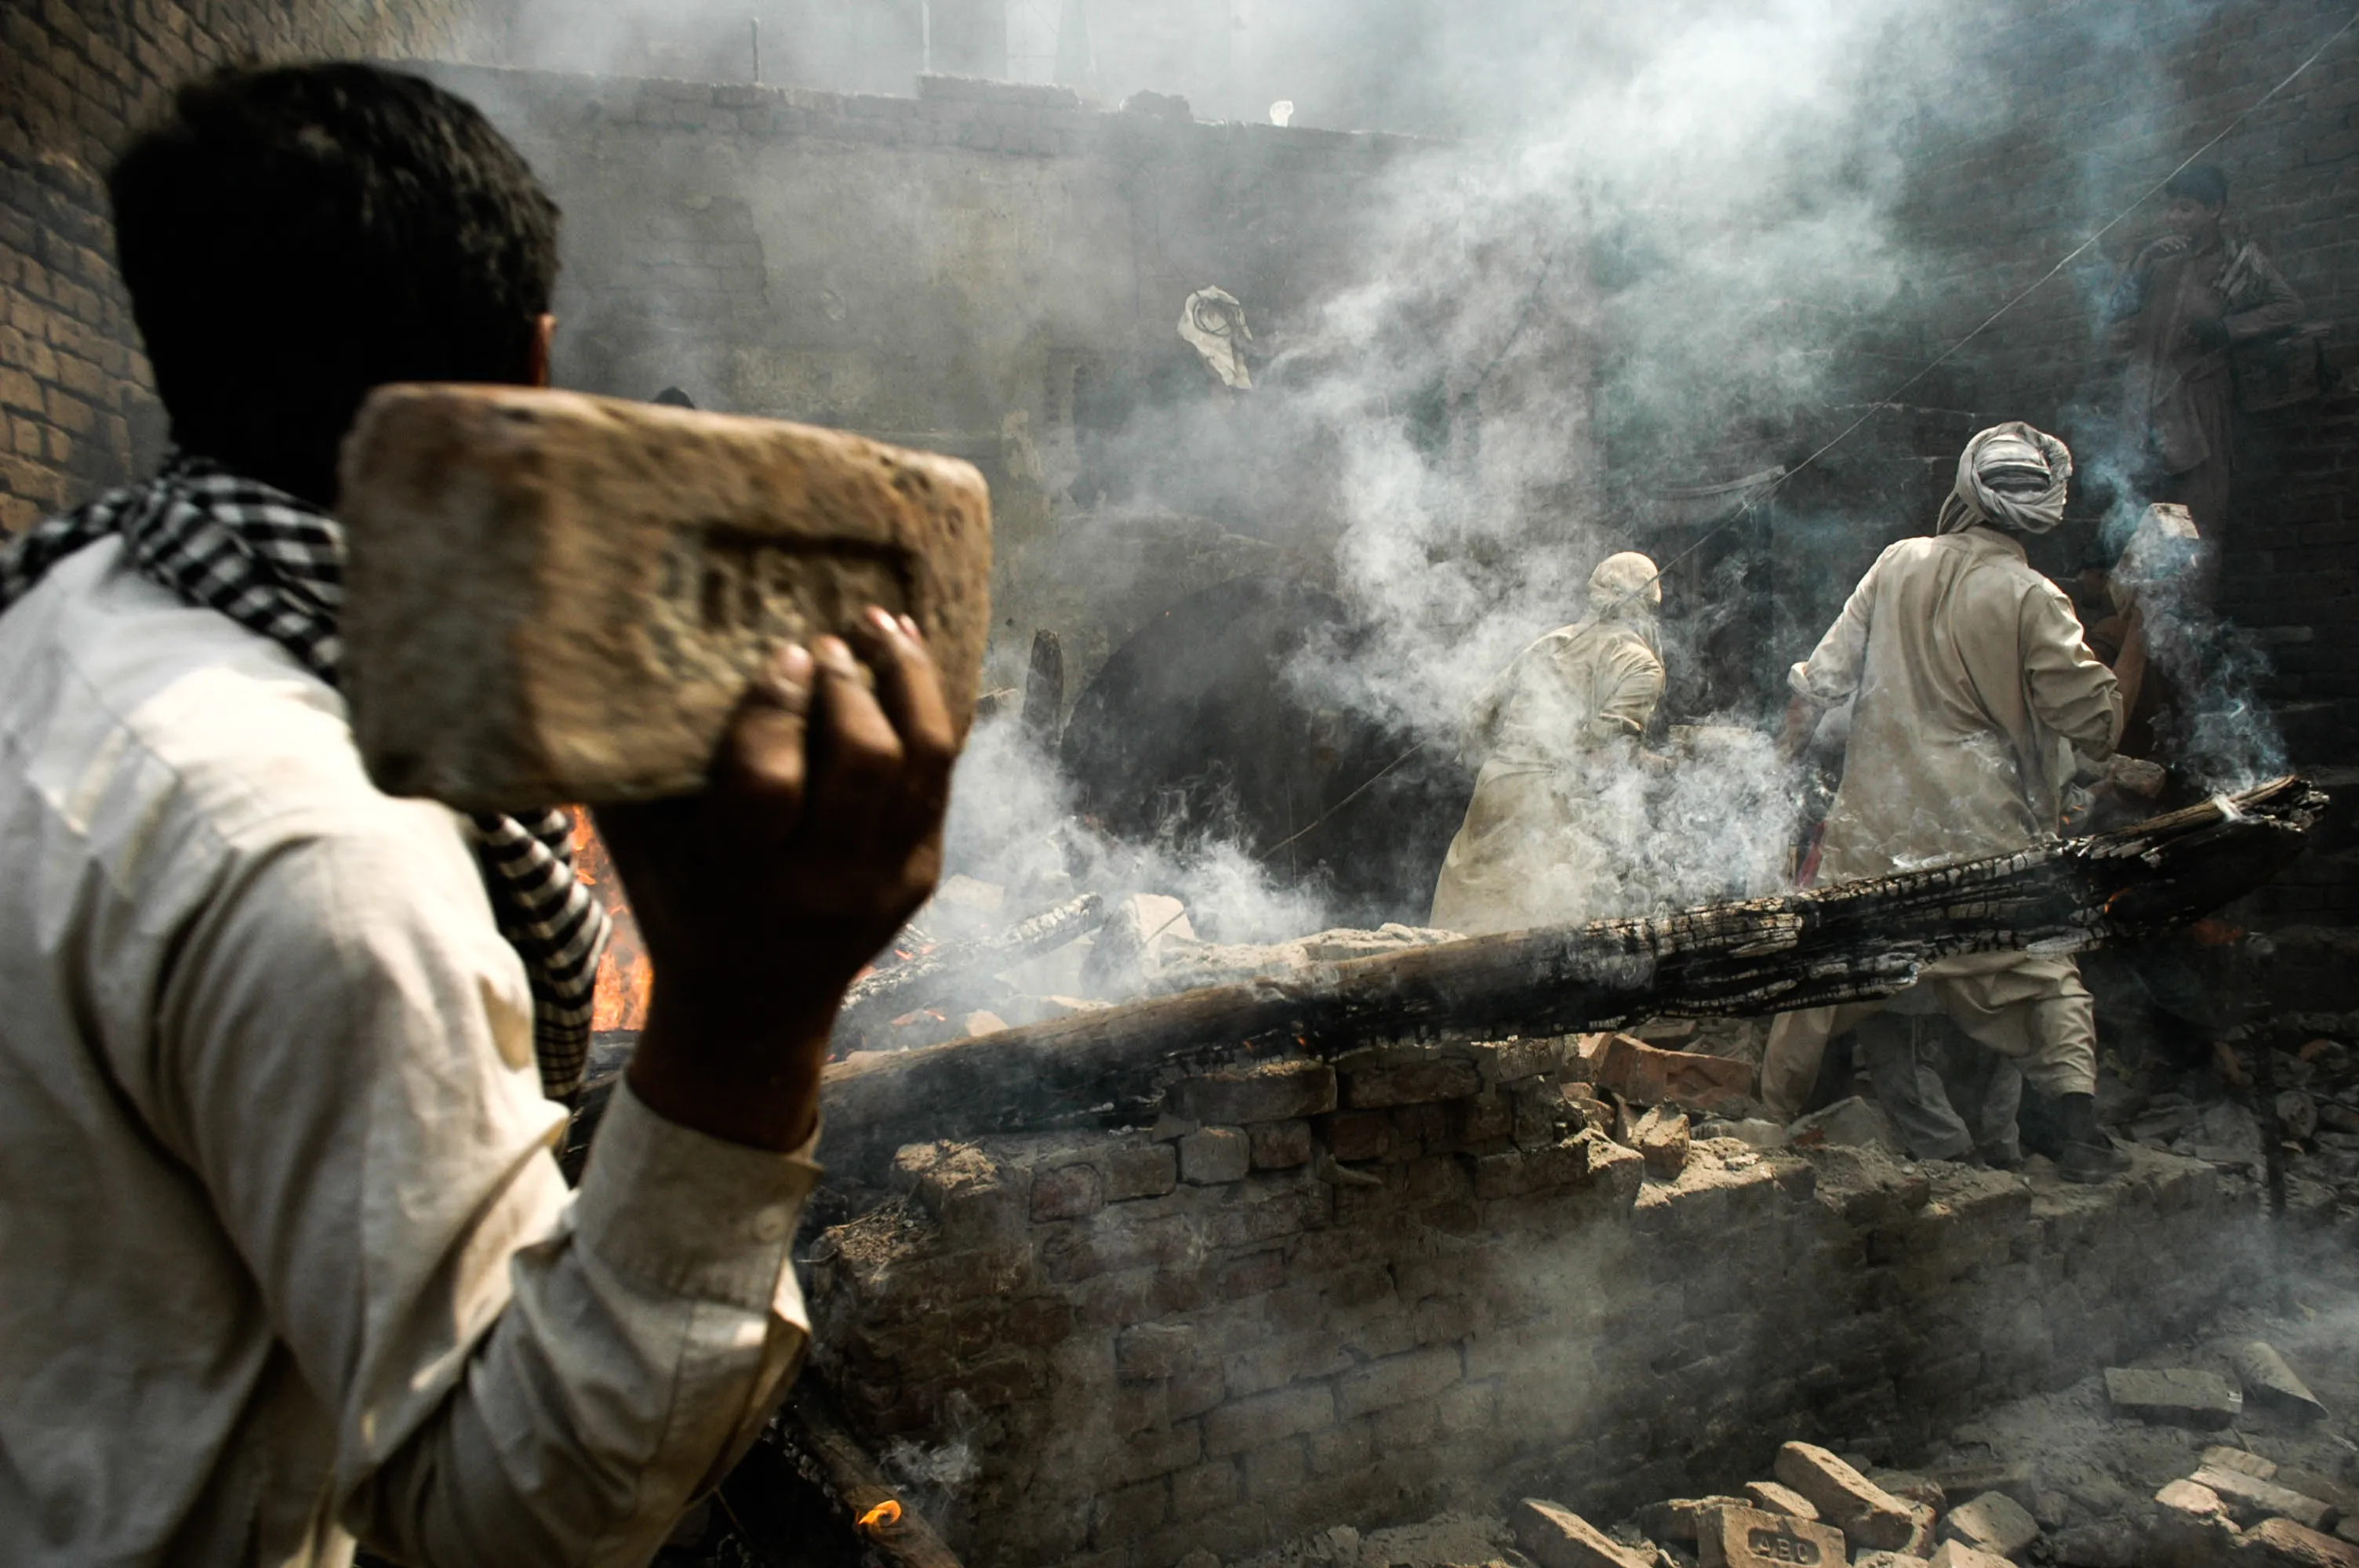 Una turba de musulmanes lanzan ladrillos a una casa cristiana después de incendiarla, en Lahore, Pakistán, el sábado 9 de marzo de 2013.?w=200&h=150